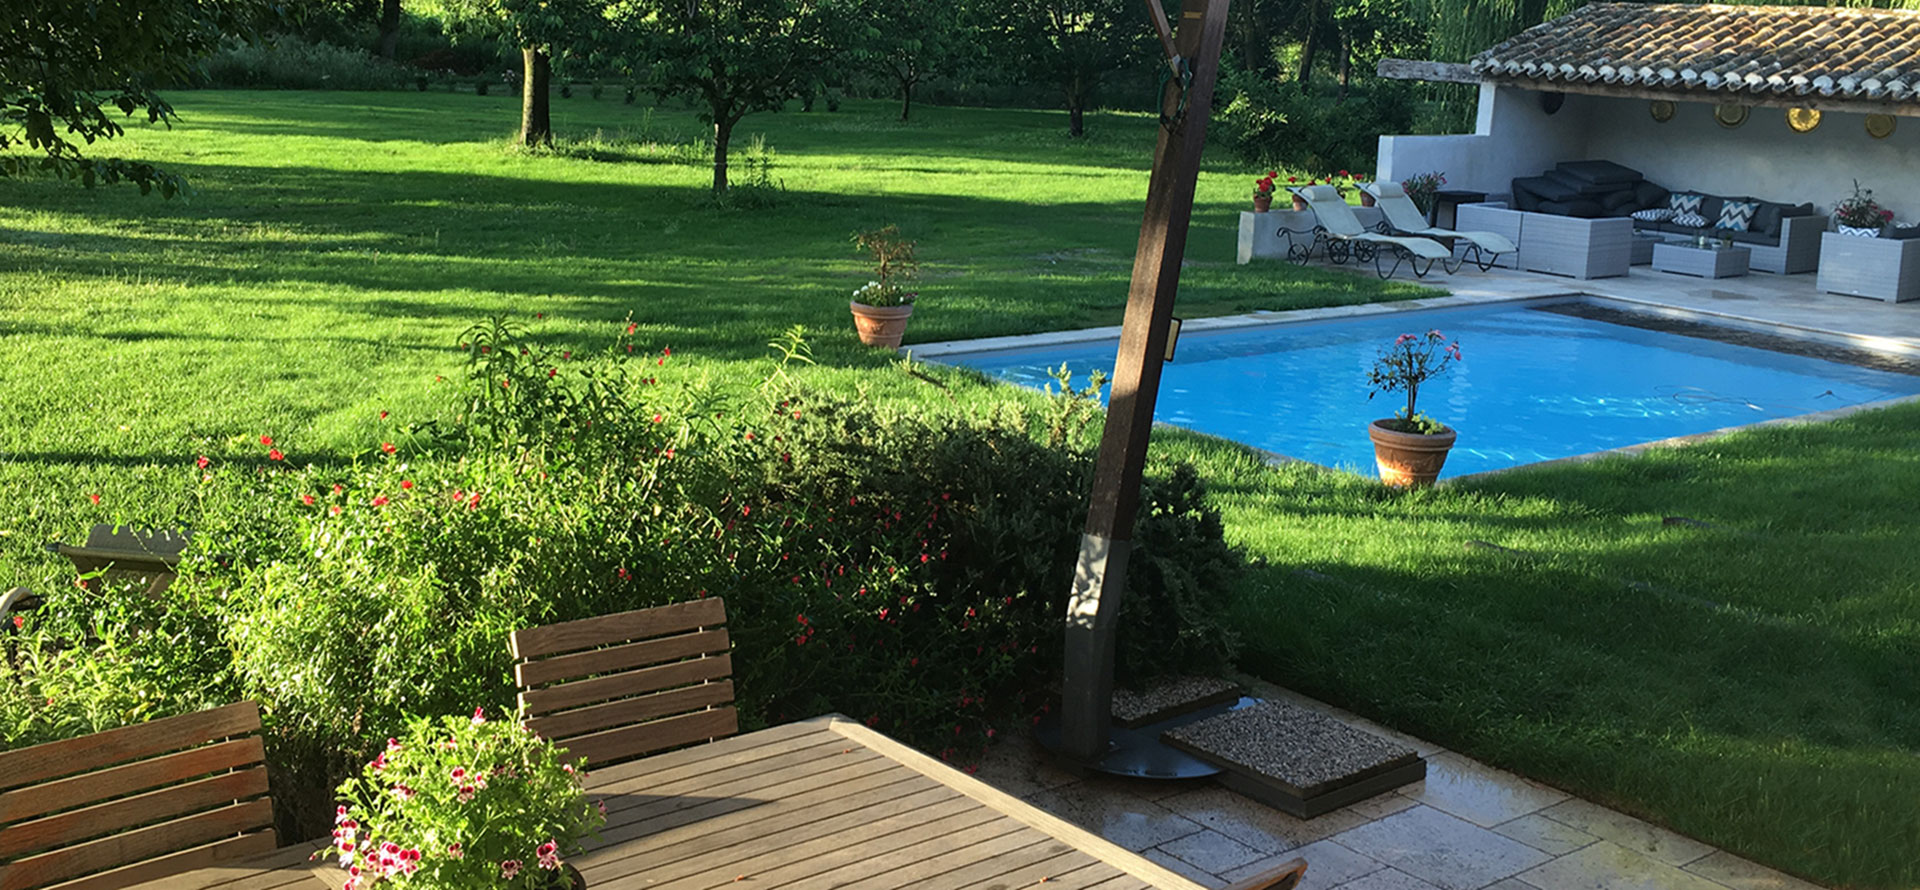 De tuin en het verwarmde privézwembad van de gîtes van Château de la Vernède